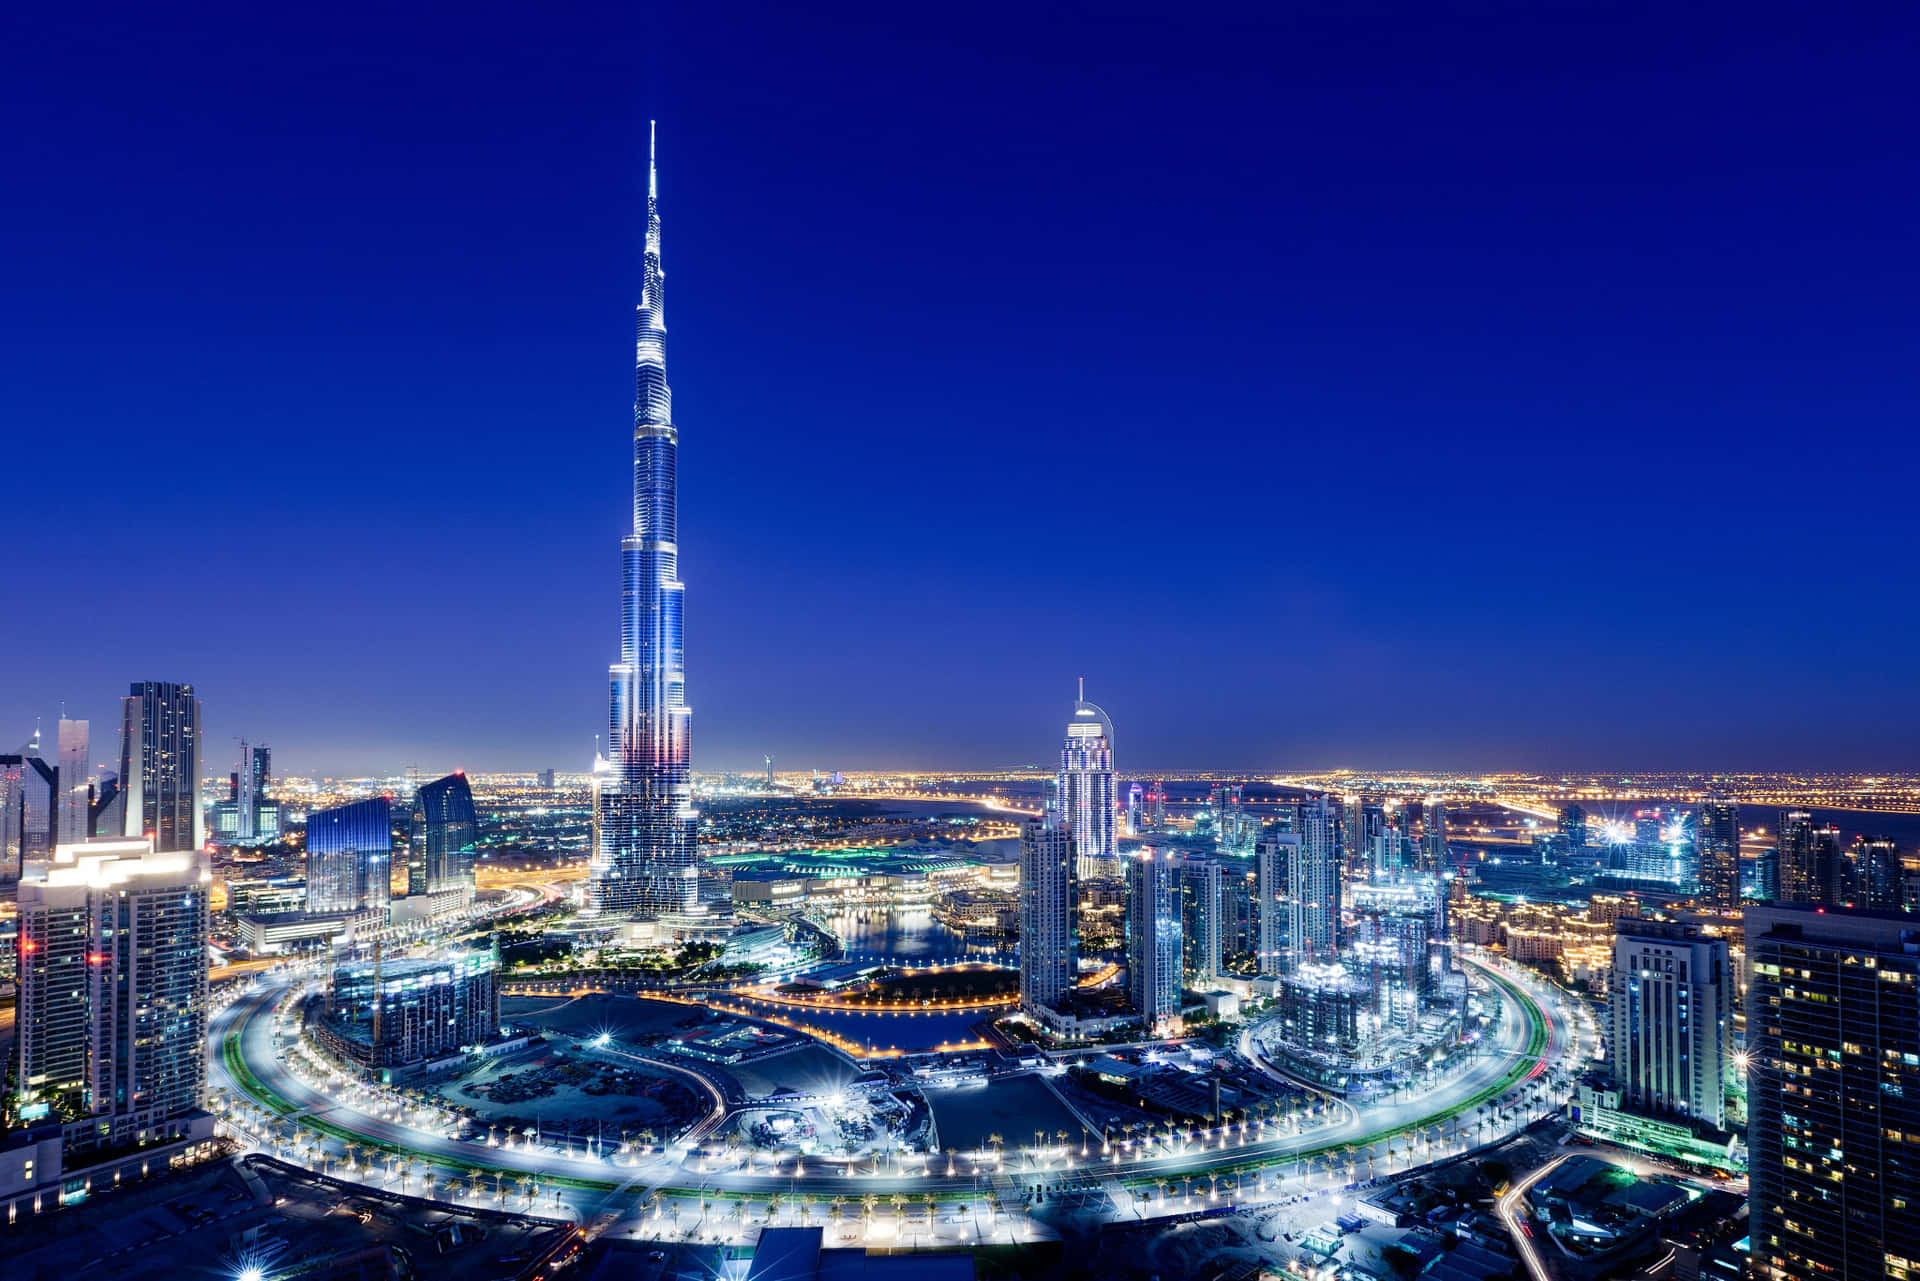 Ilmaestoso Burj Khalifa Si Erge Imponente Contro Un Sereno Cielo Azzurro.